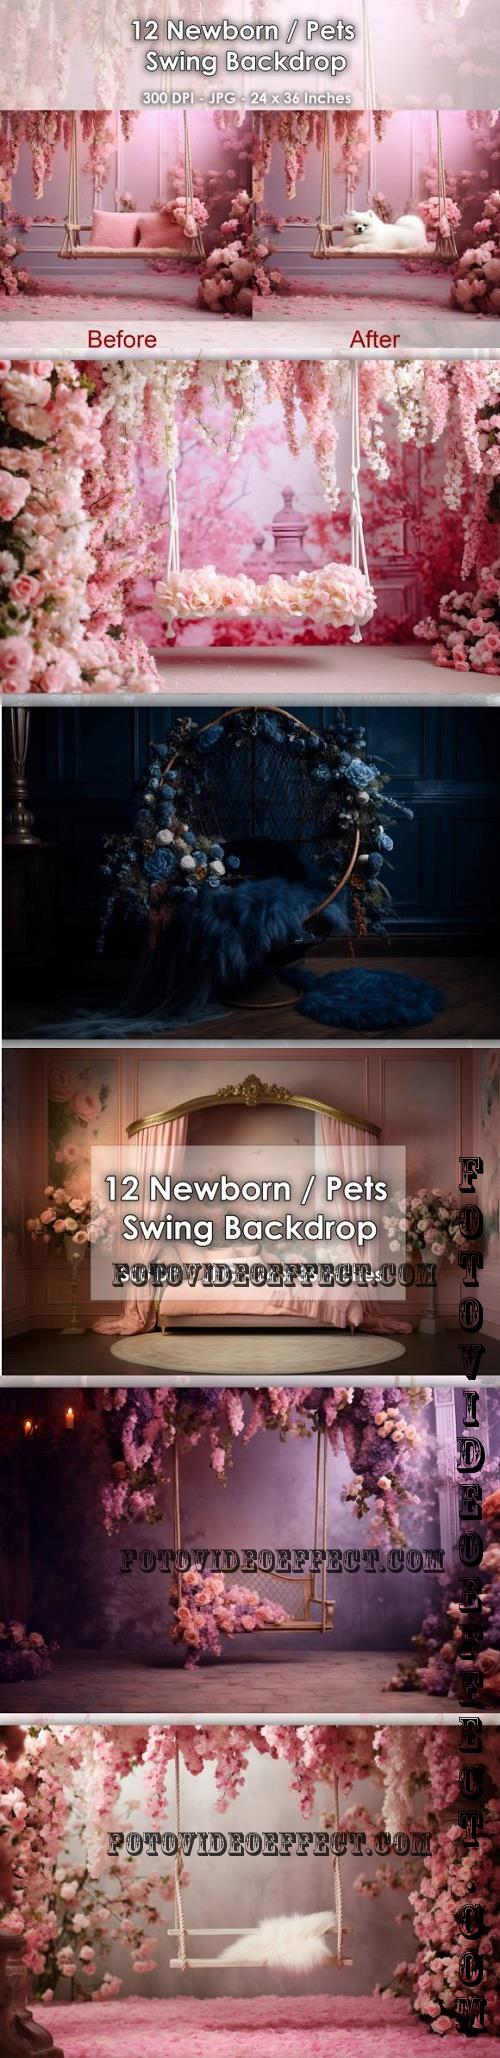 12 Newborn / Pets Swing Backdrop JPG